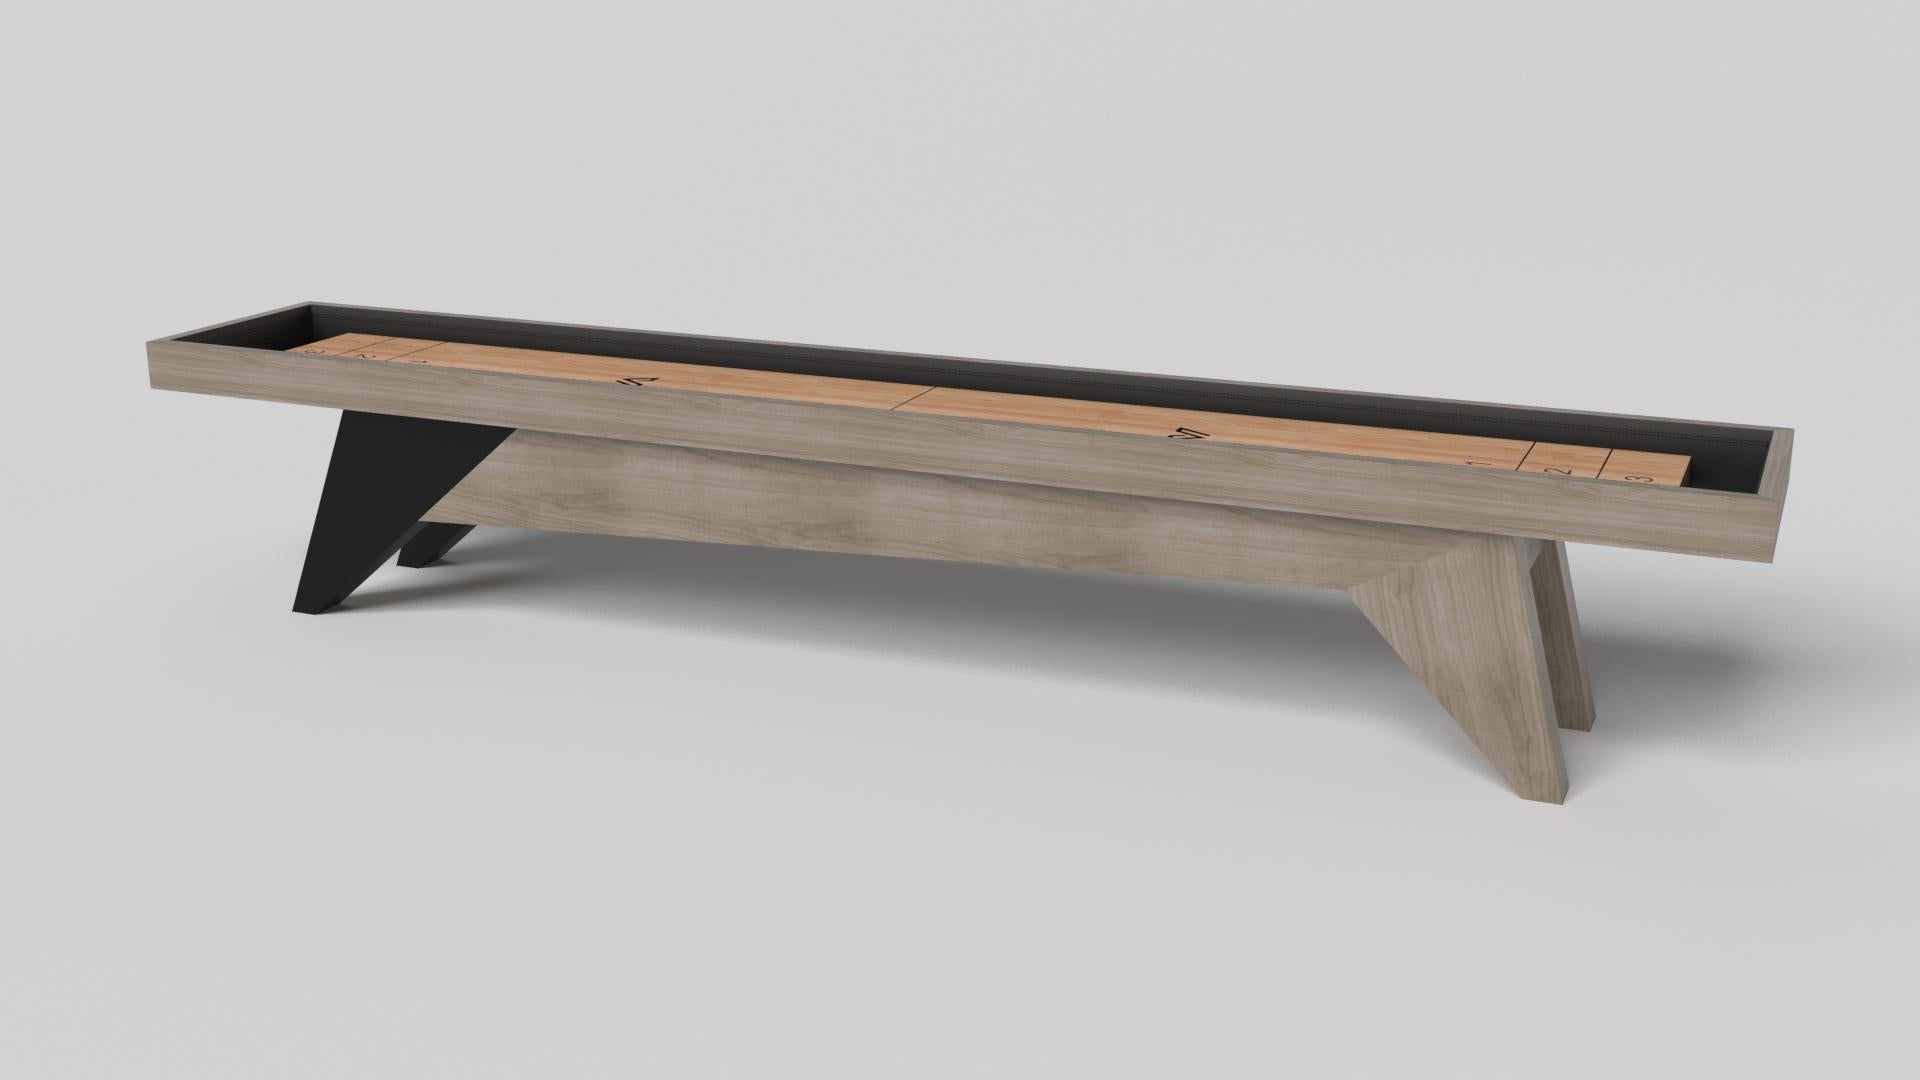 Der schlichte, aber raffinierte Shuffleboard-Tisch Mantis verleiht dem klassischen vierbeinigen Design eine frische, moderne Note. Scharfe Winkel und konisch zulaufende Beine sorgen für elegante Stabilität.

Größe:

22 Fuß - 264 